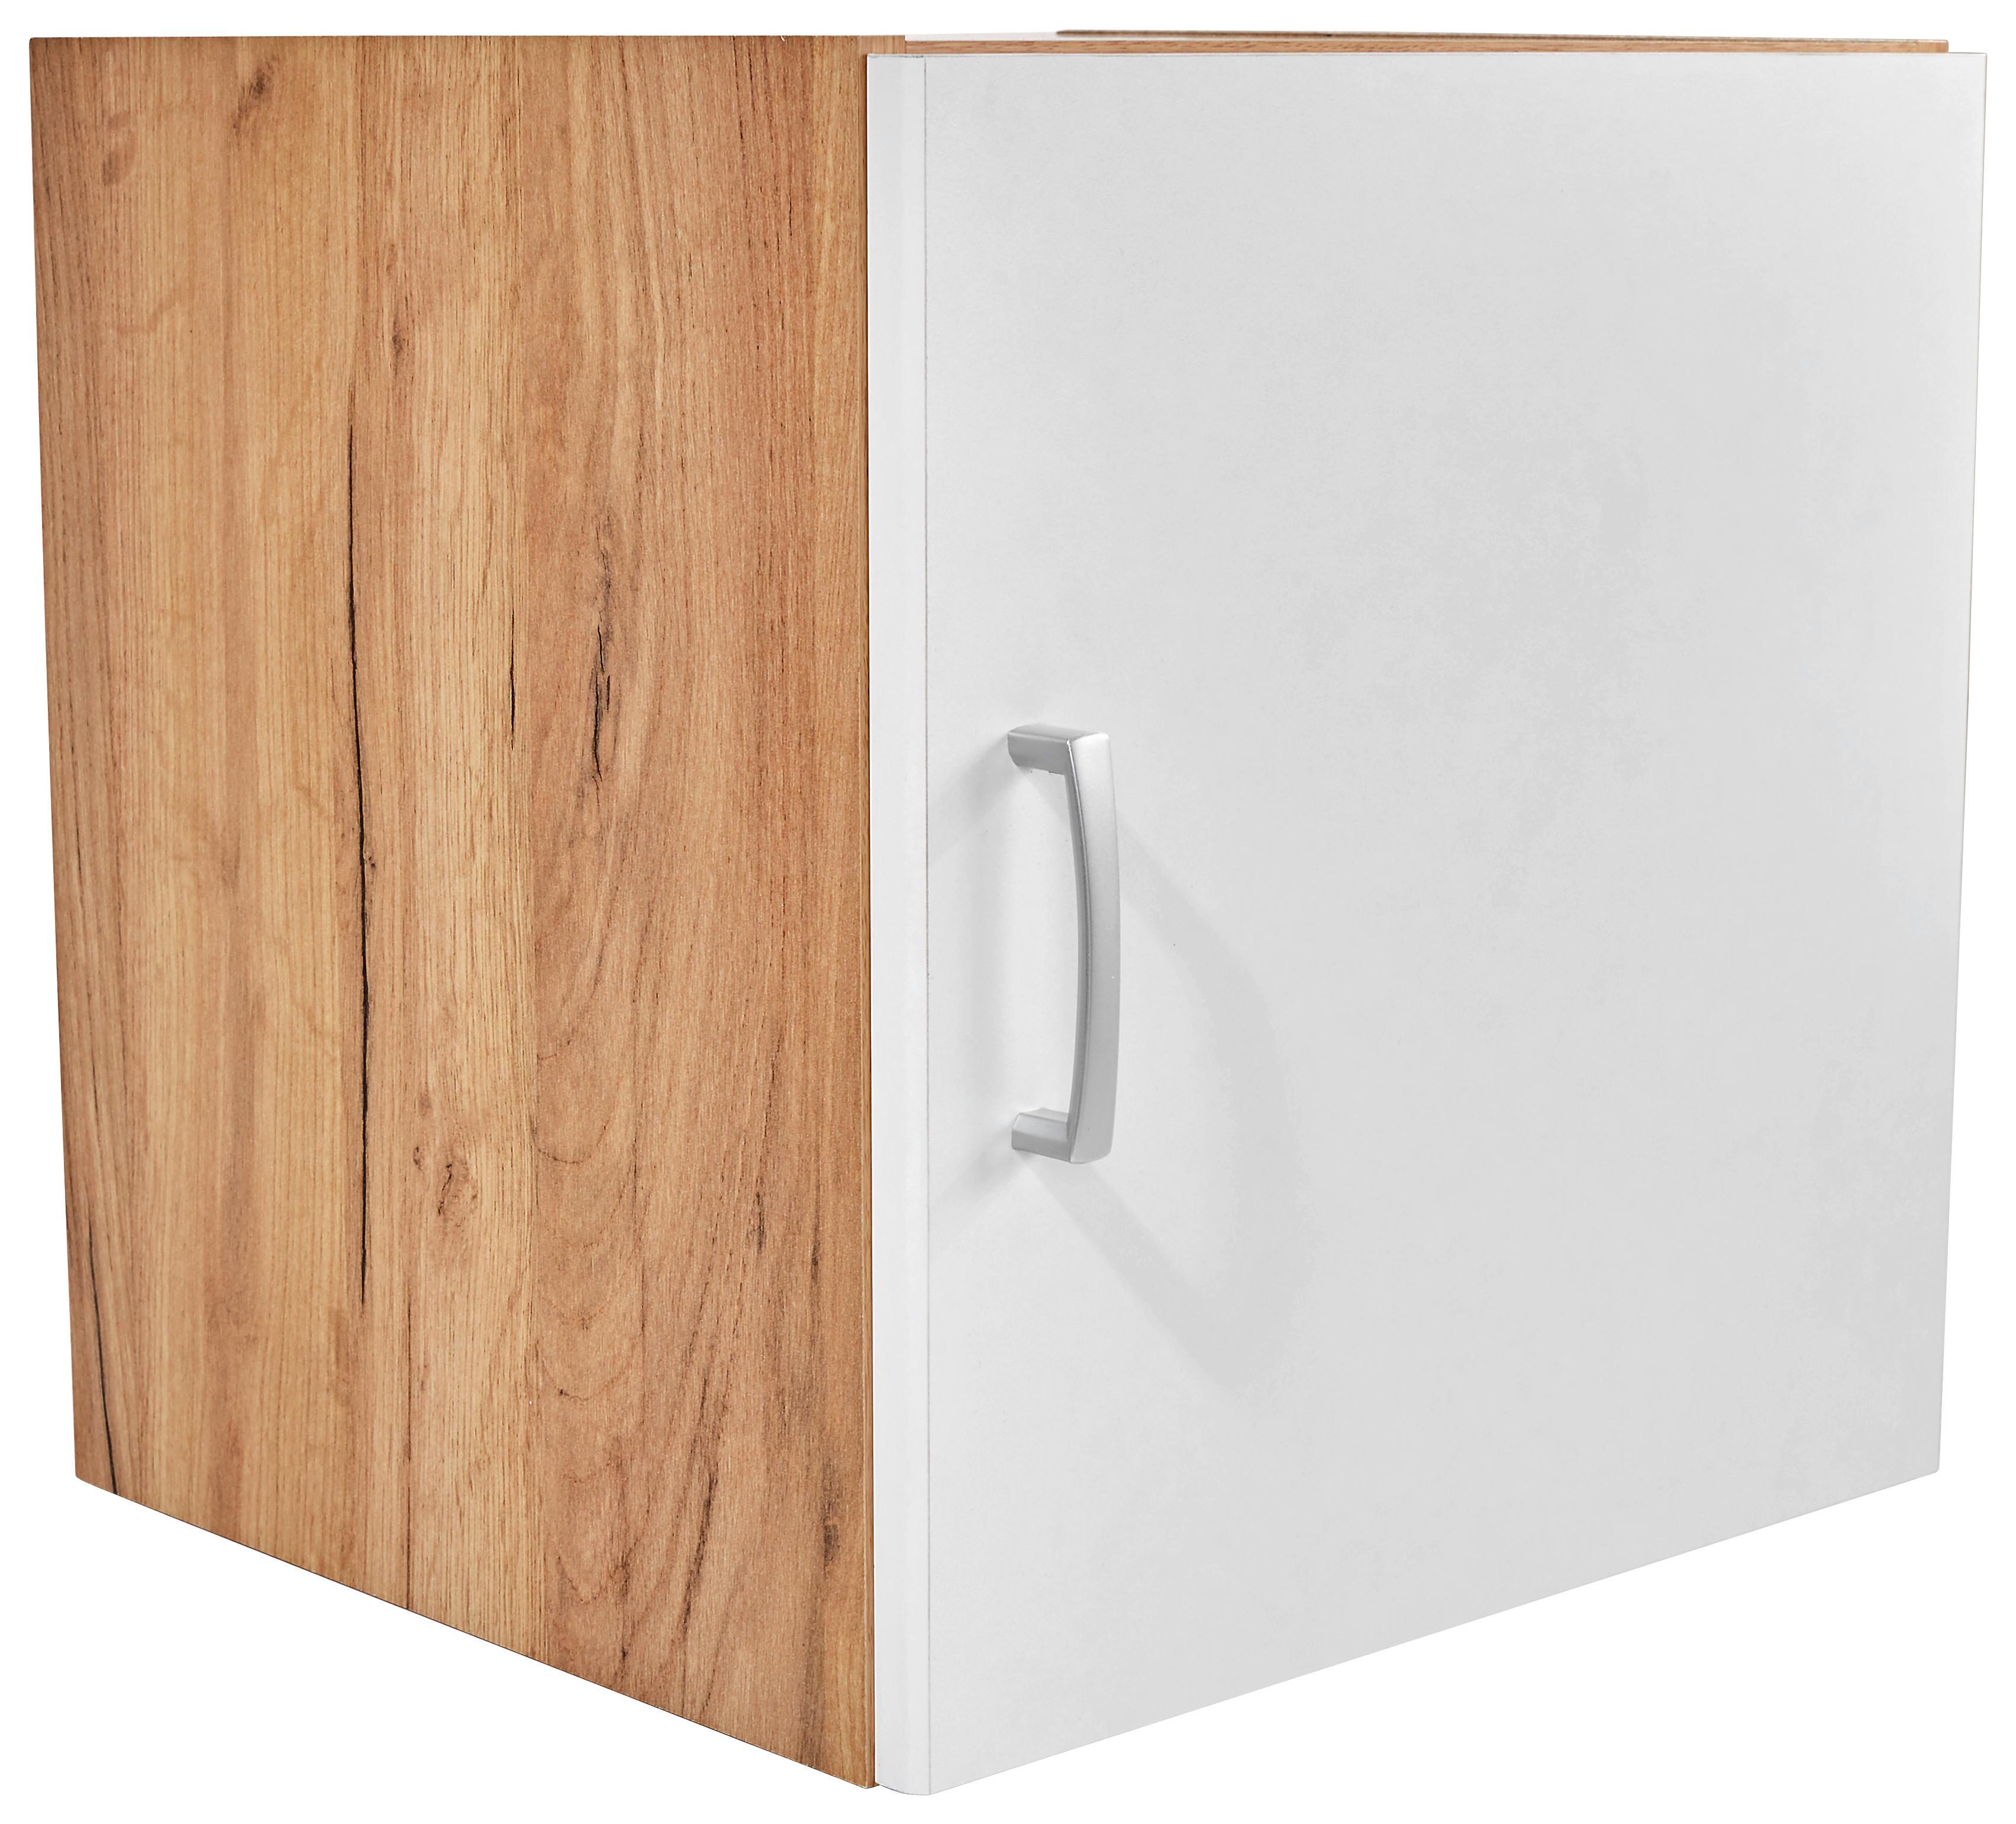 Dulap auxiliar superior Tio - alb/culoare lemn stejar, Konventionell, material pe bază de lemn (45/43/37,5cm)